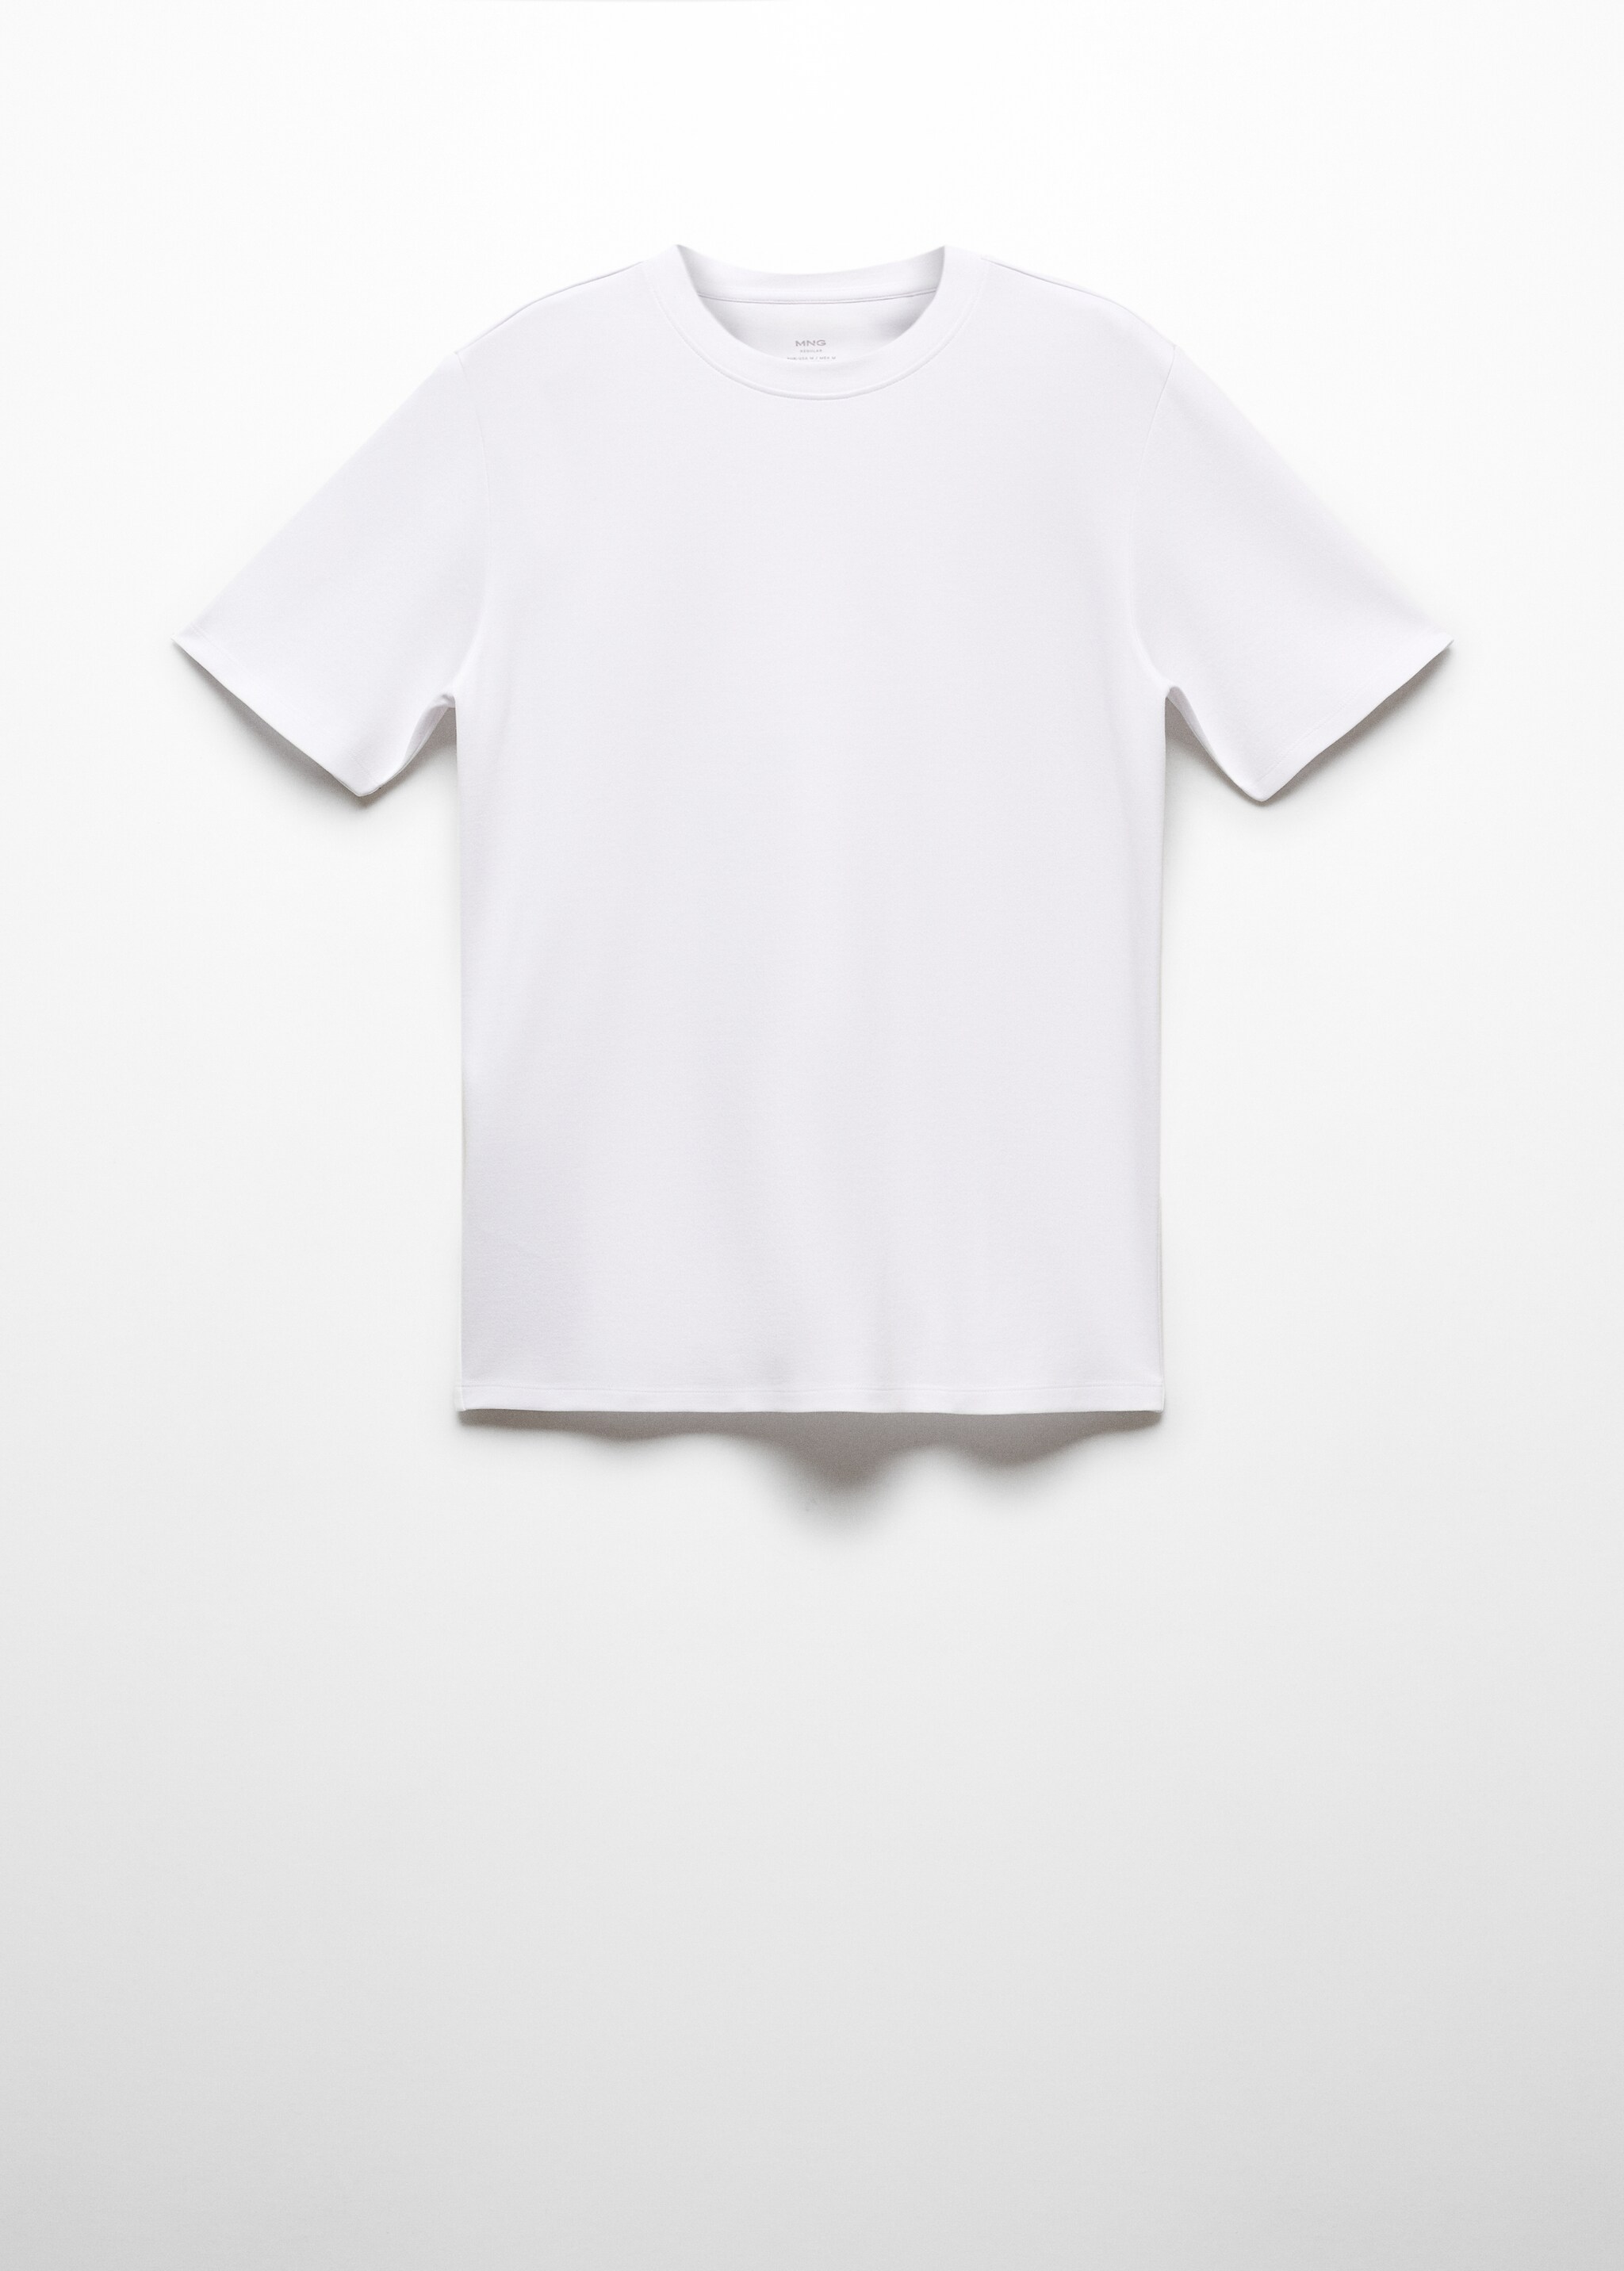 Camiseta algodón transpirable - Artículo sin modelo